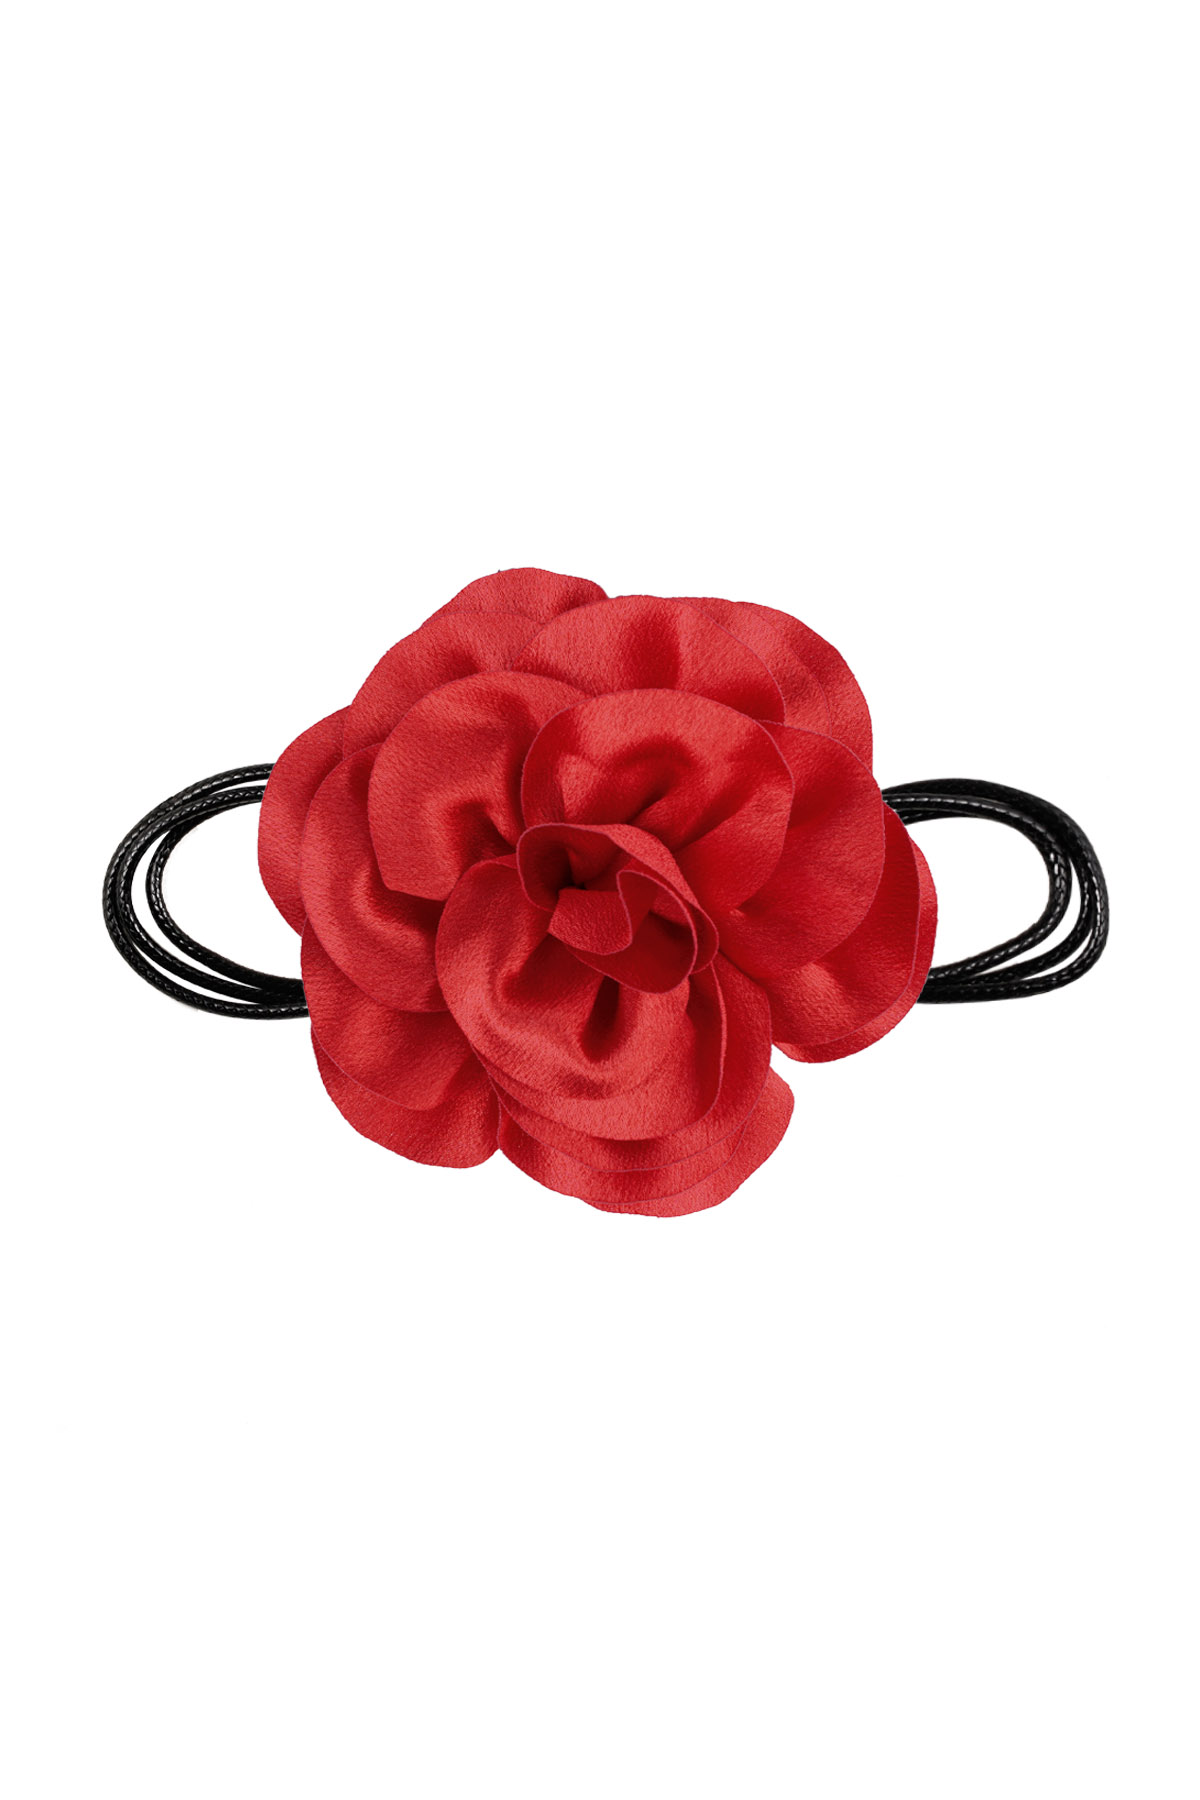 Collar cuerda flor brillante - rojo h5 